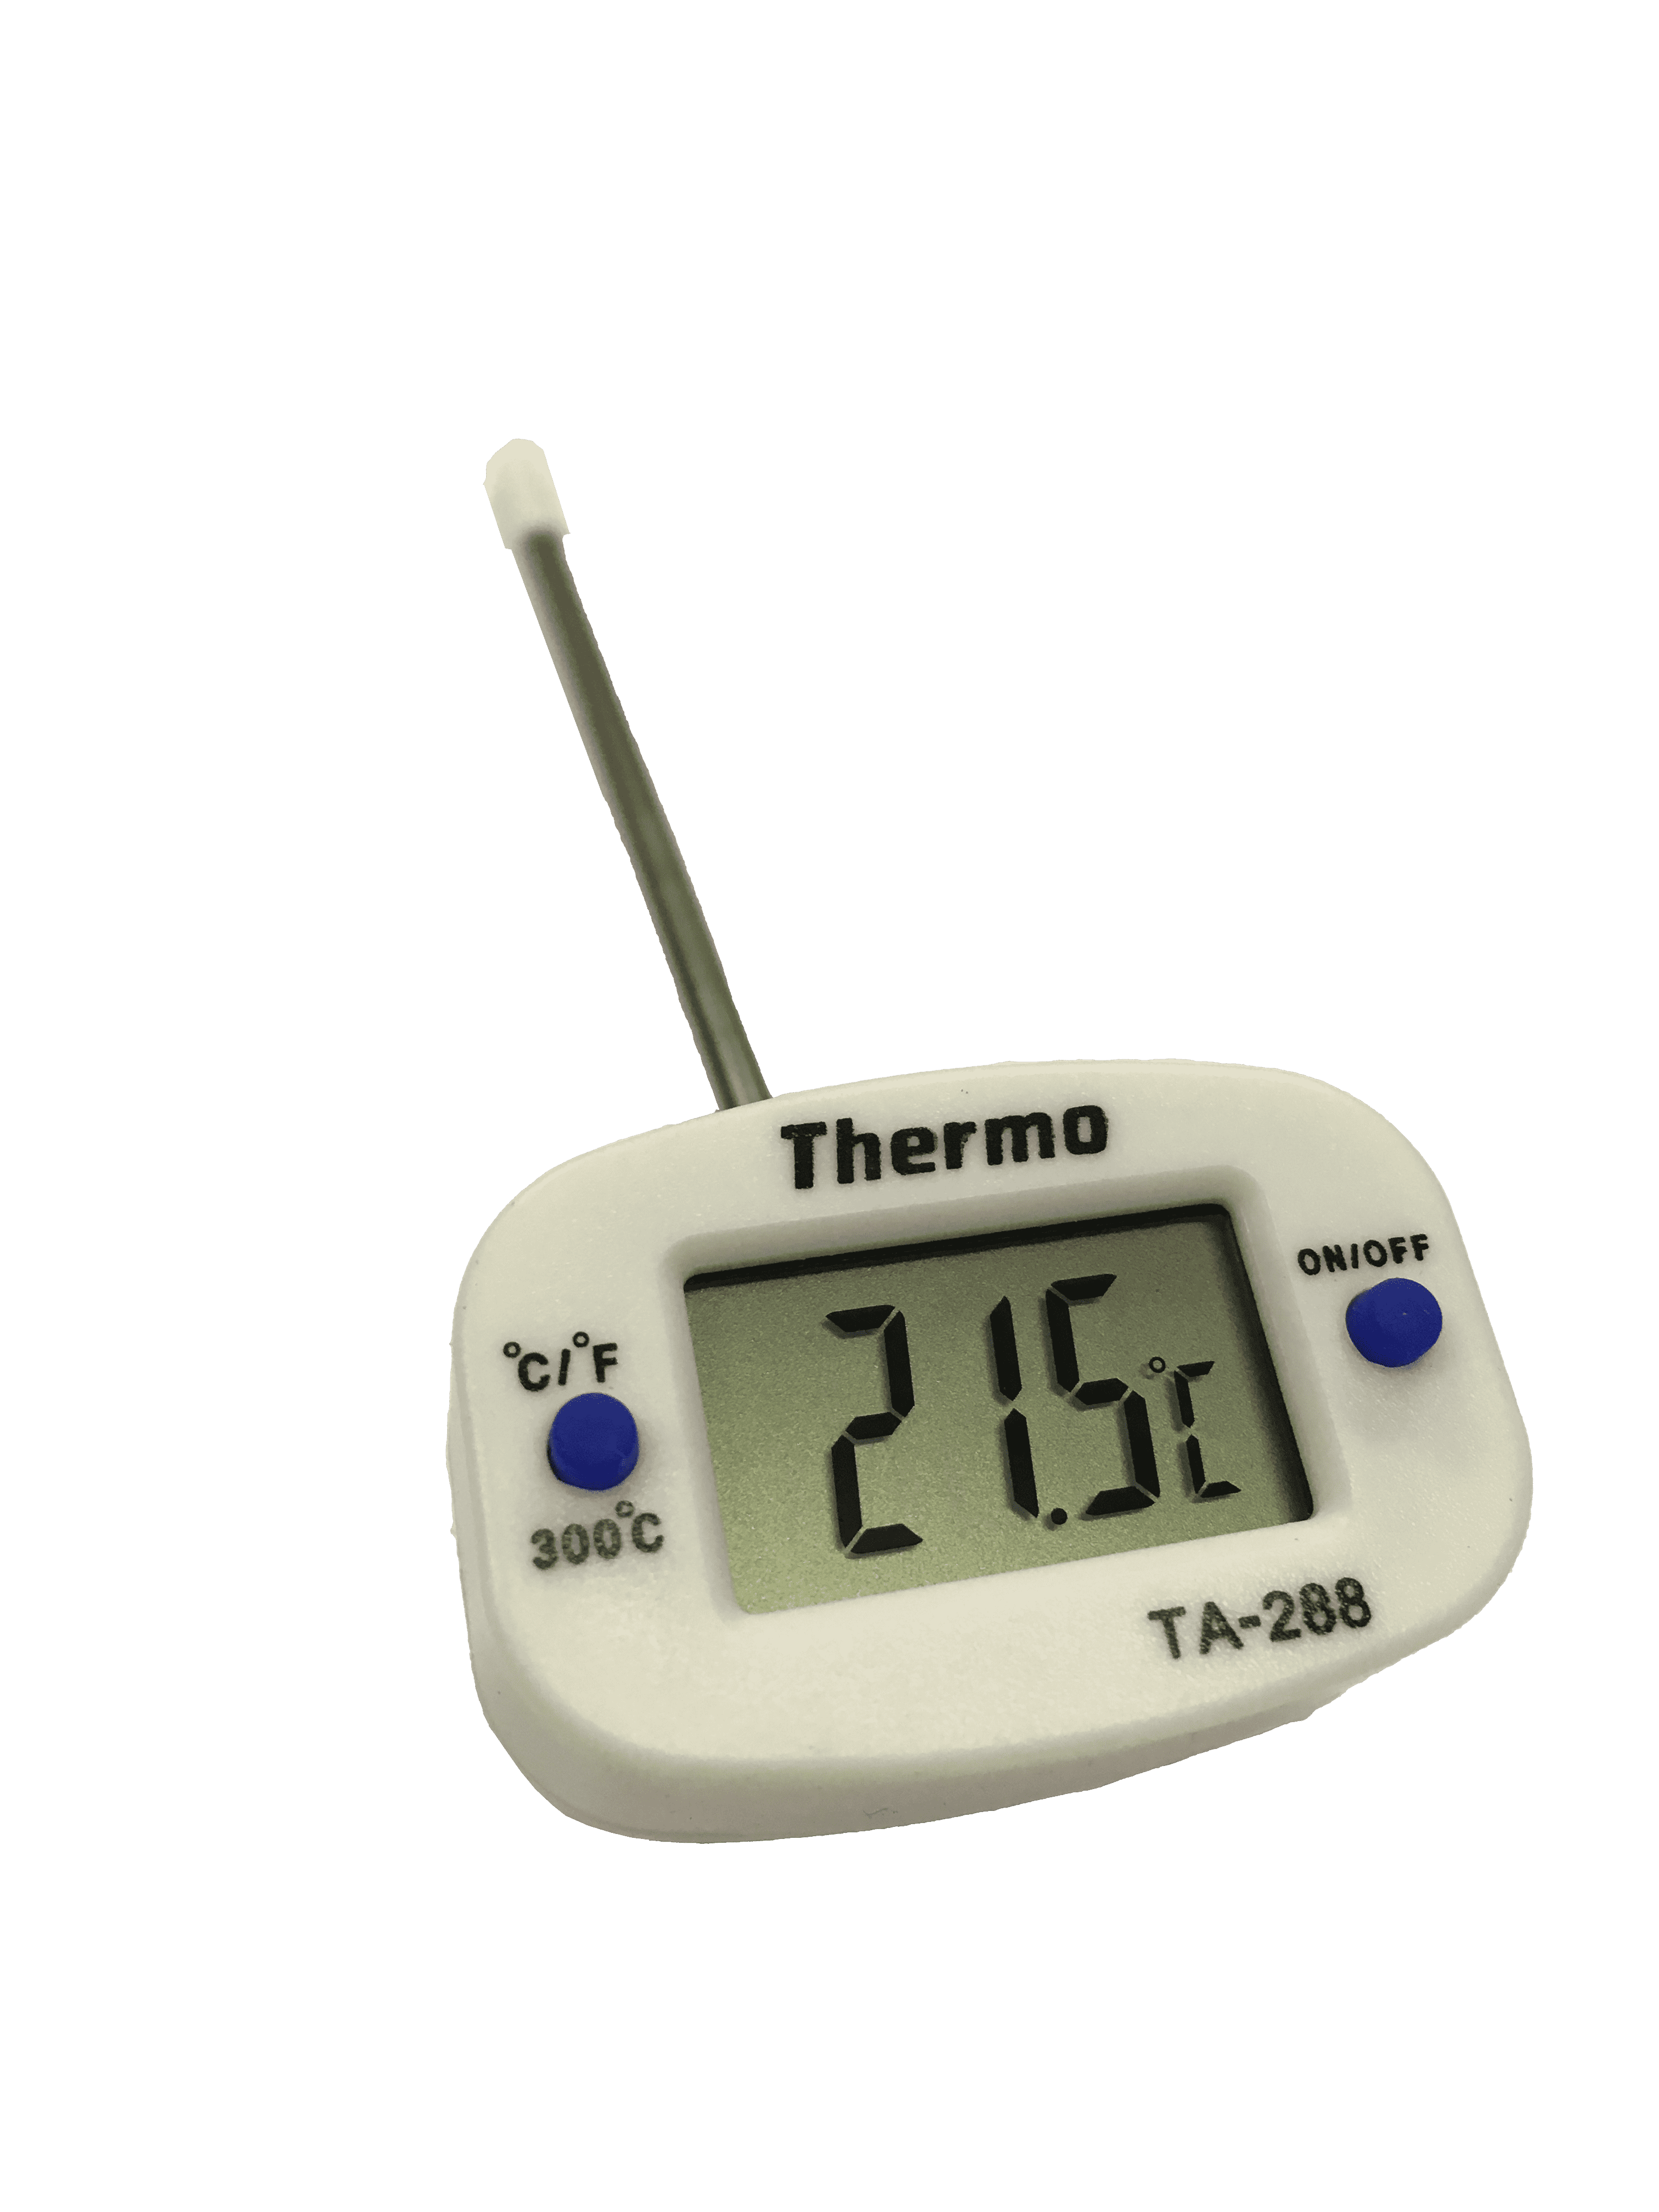 Фото с термометром